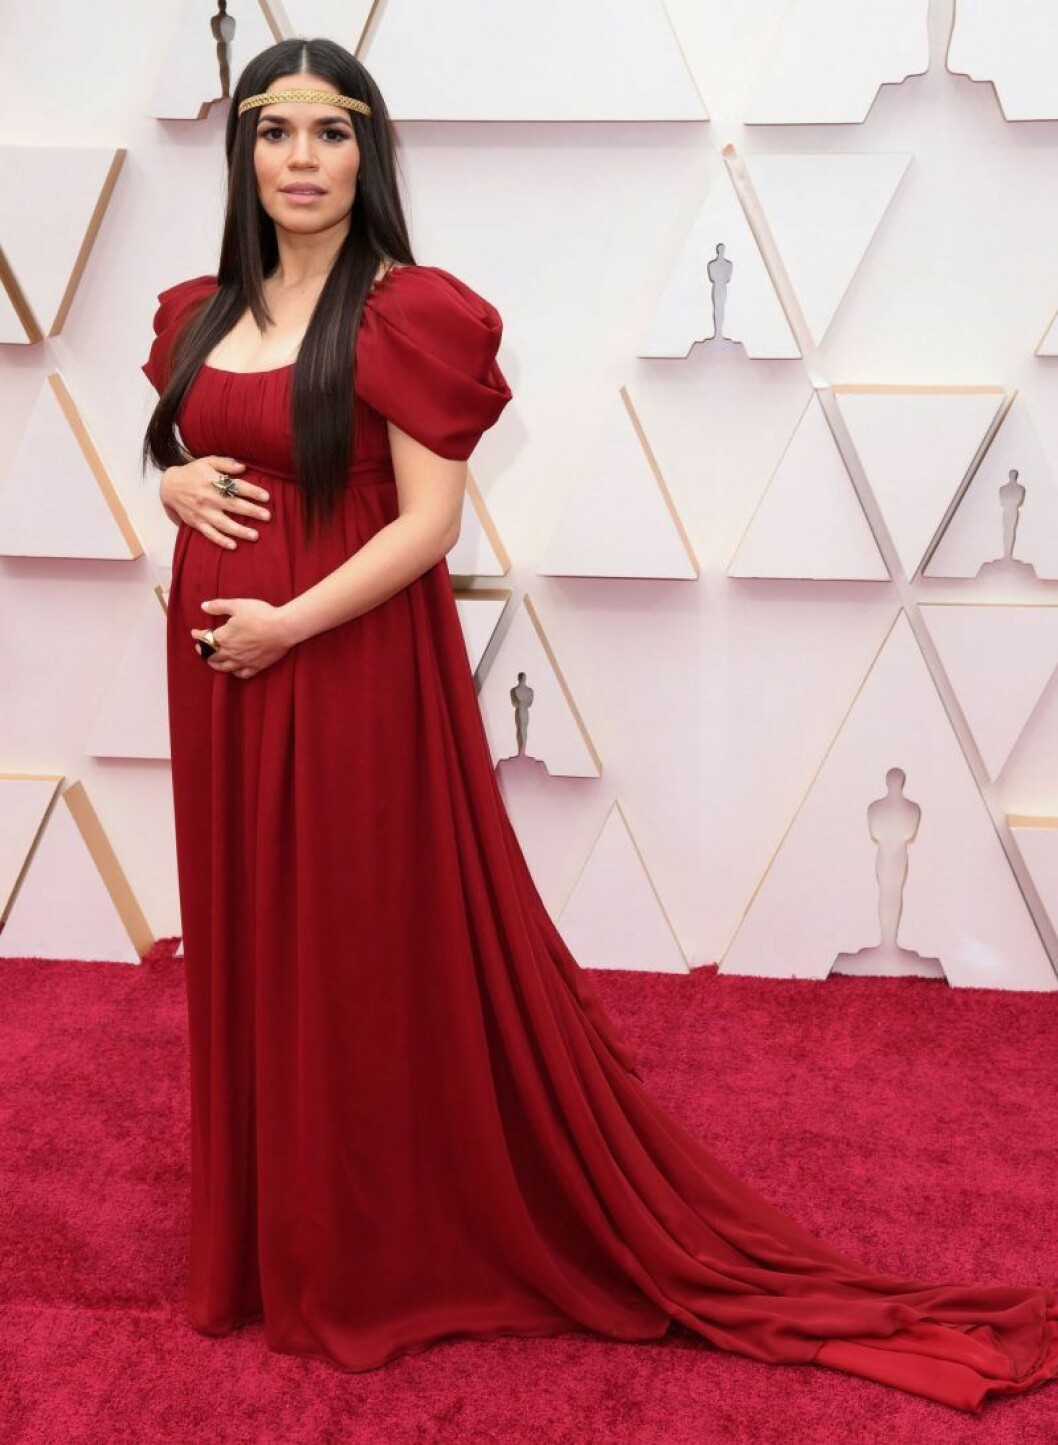 America Ferrera är gravid i röd klänning på röda mattan